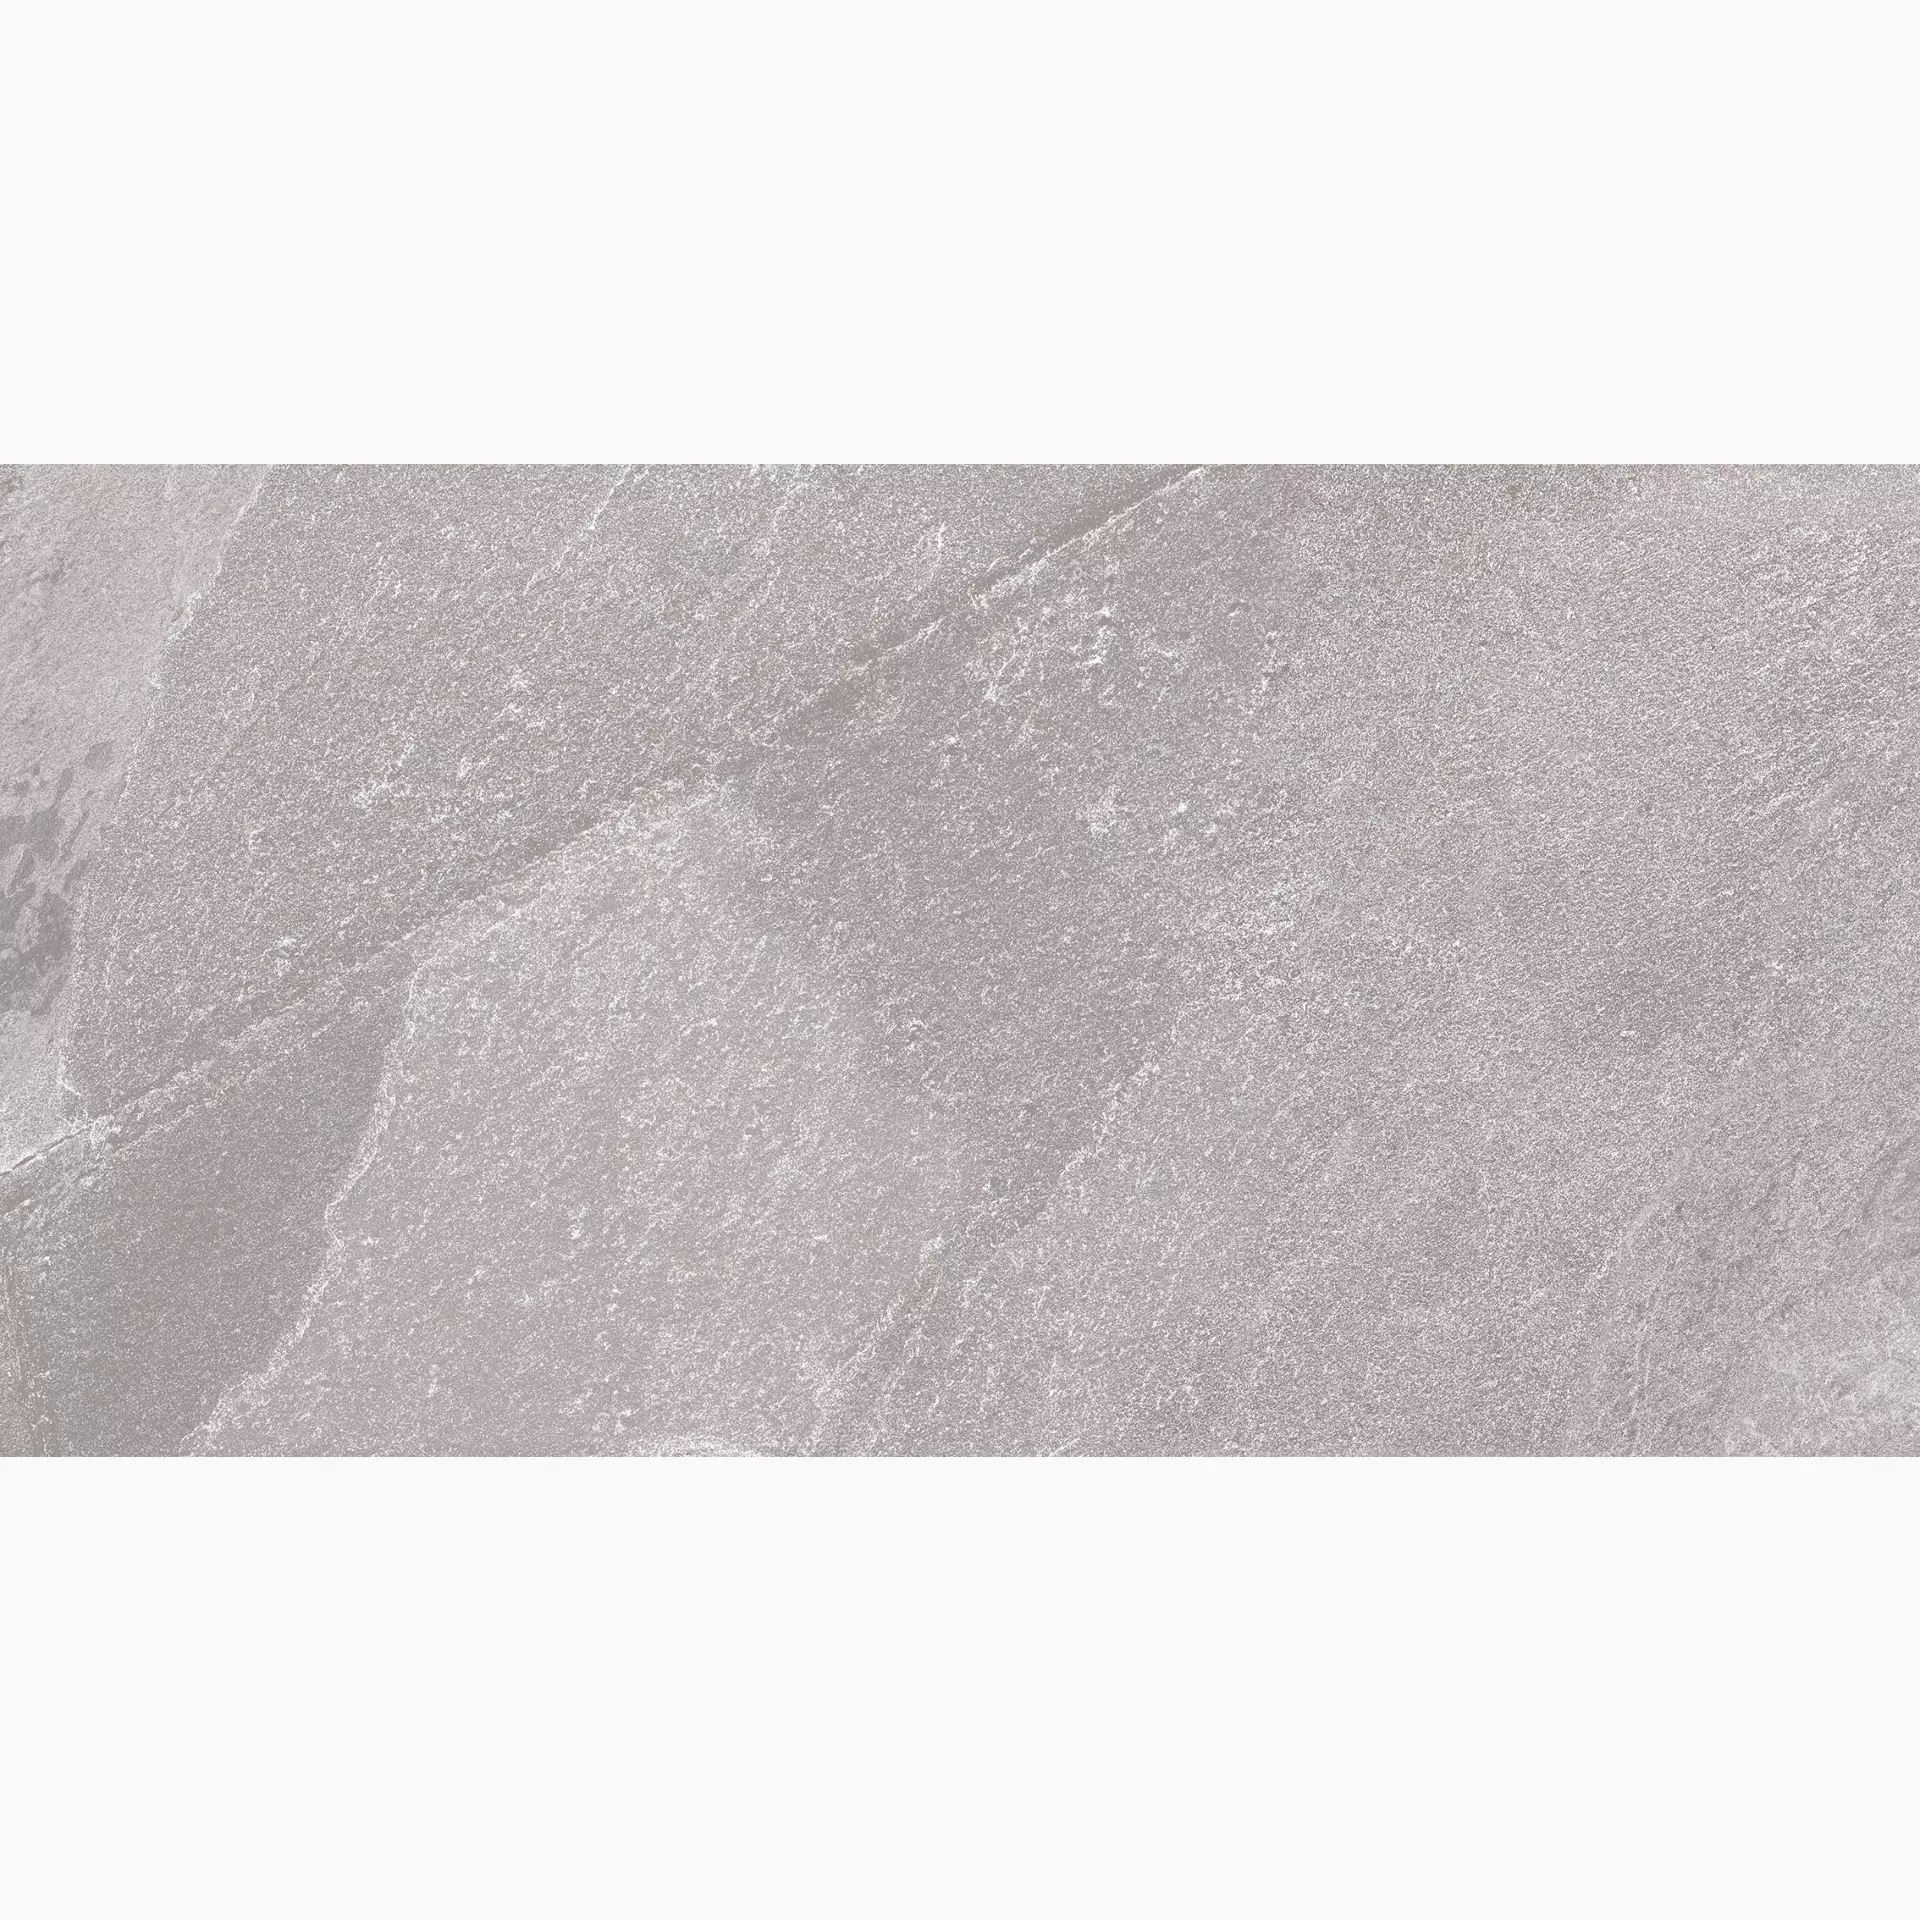 Florim Natural Stone Of Cerim Fossil Naturale – Matt Fossil 752015 matt natur 30x60cm rektifiziert 9mm